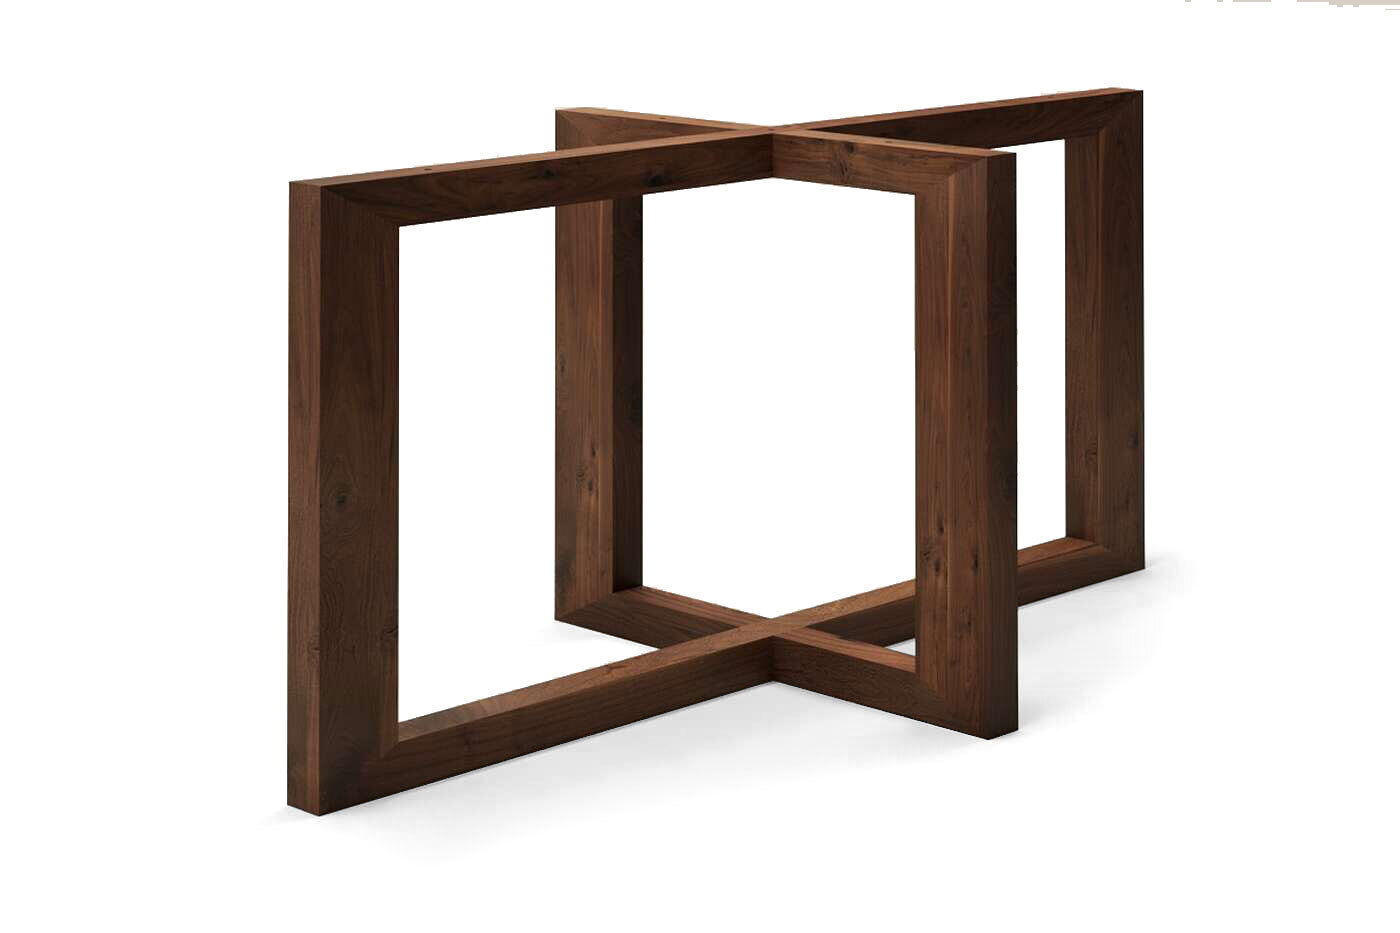 Nussbaum Tischgestell Rasmus aus Holz